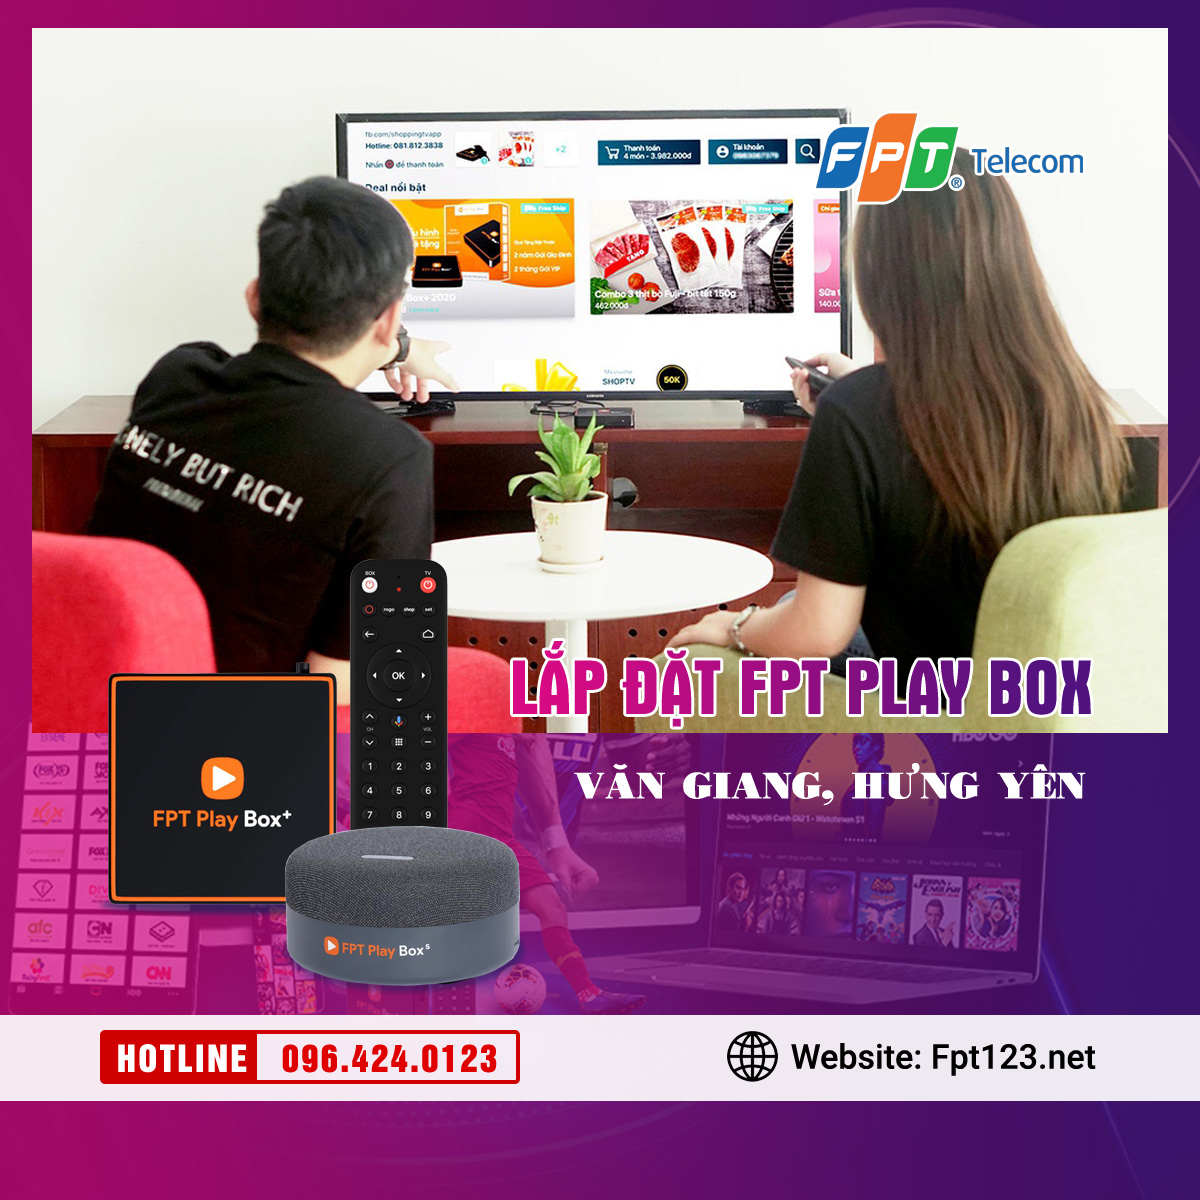 Lắp đặt FPT Play Box ở huyện Văn Giang, Hưng Yên